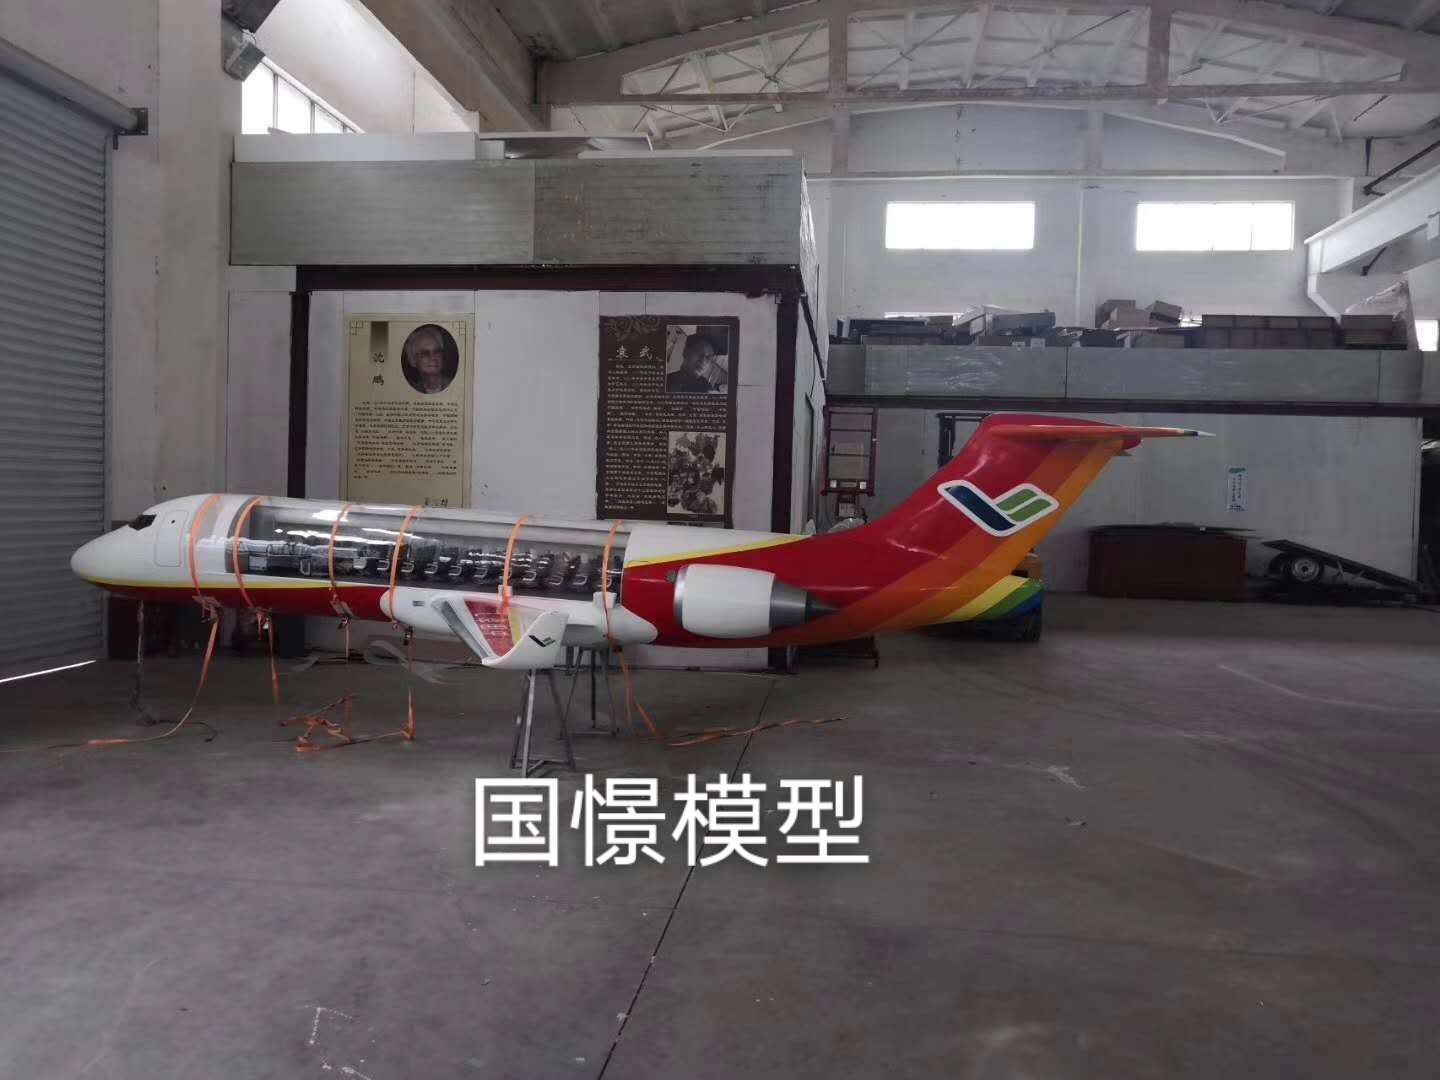 曲周县飞机模型